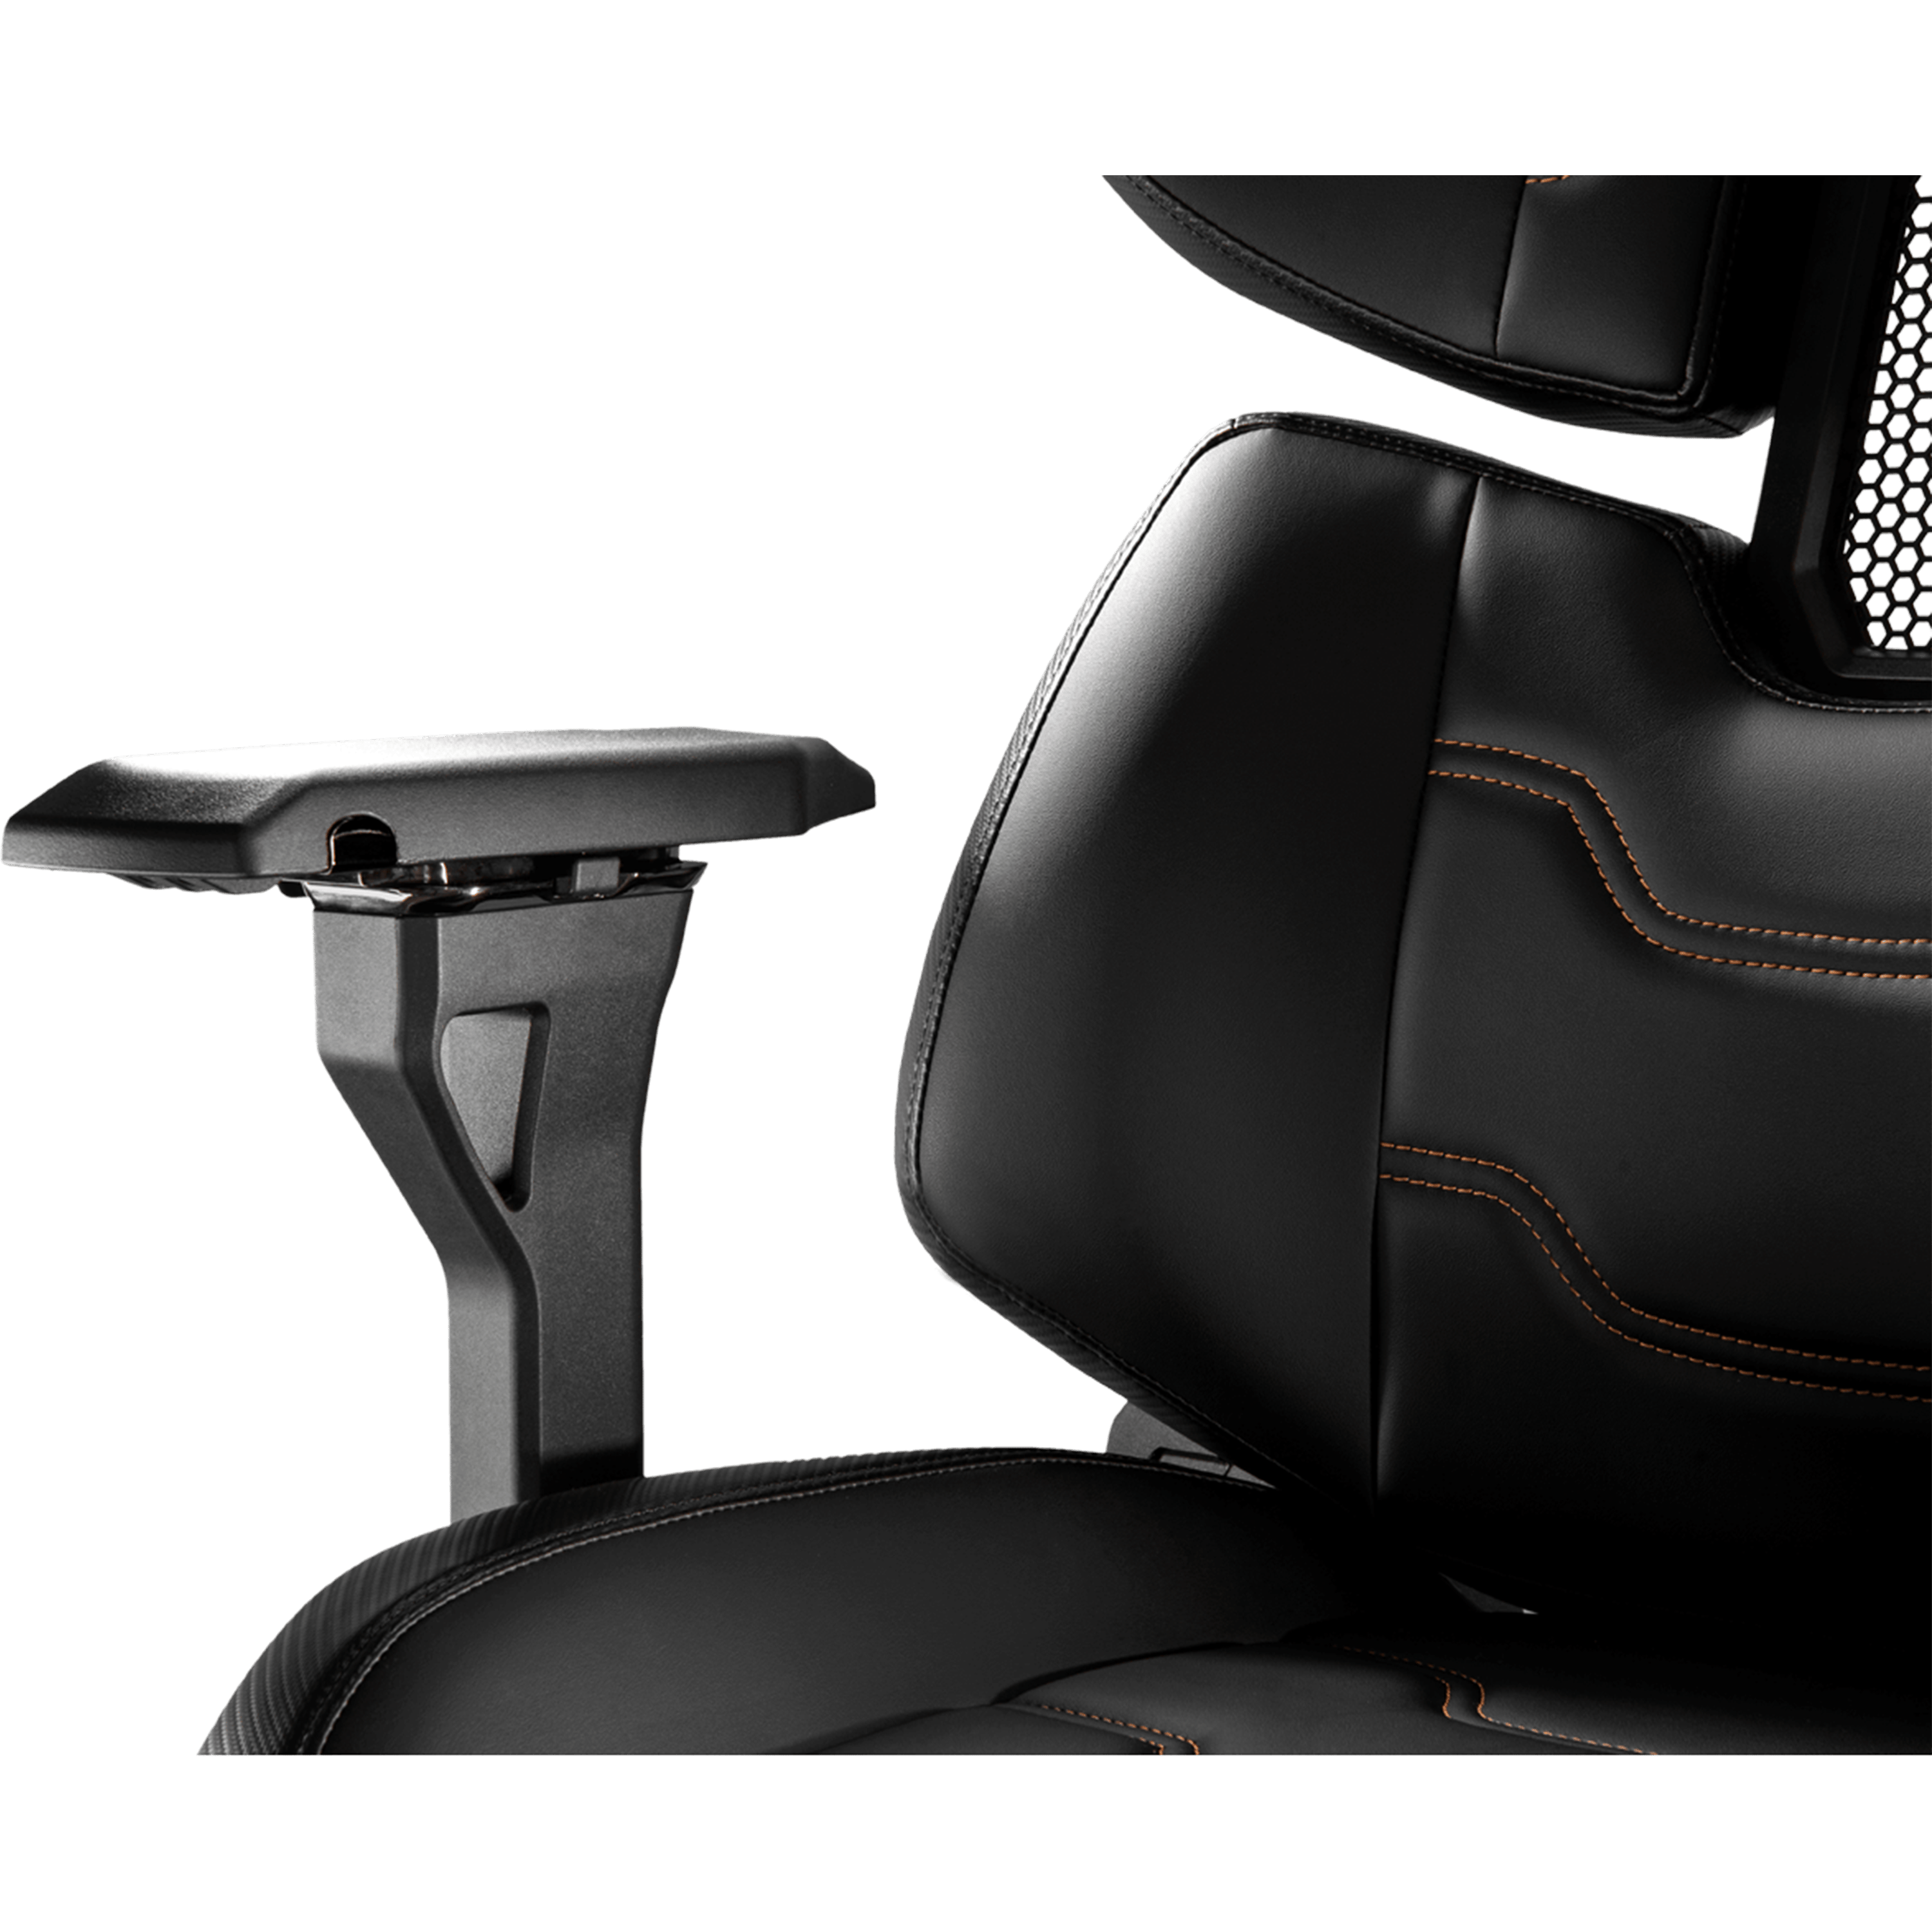 כיסא גיימינג ארגונומי Cougar Terminator Ergonomic Gaming Chair - צבע שחור שנה אחריות ע